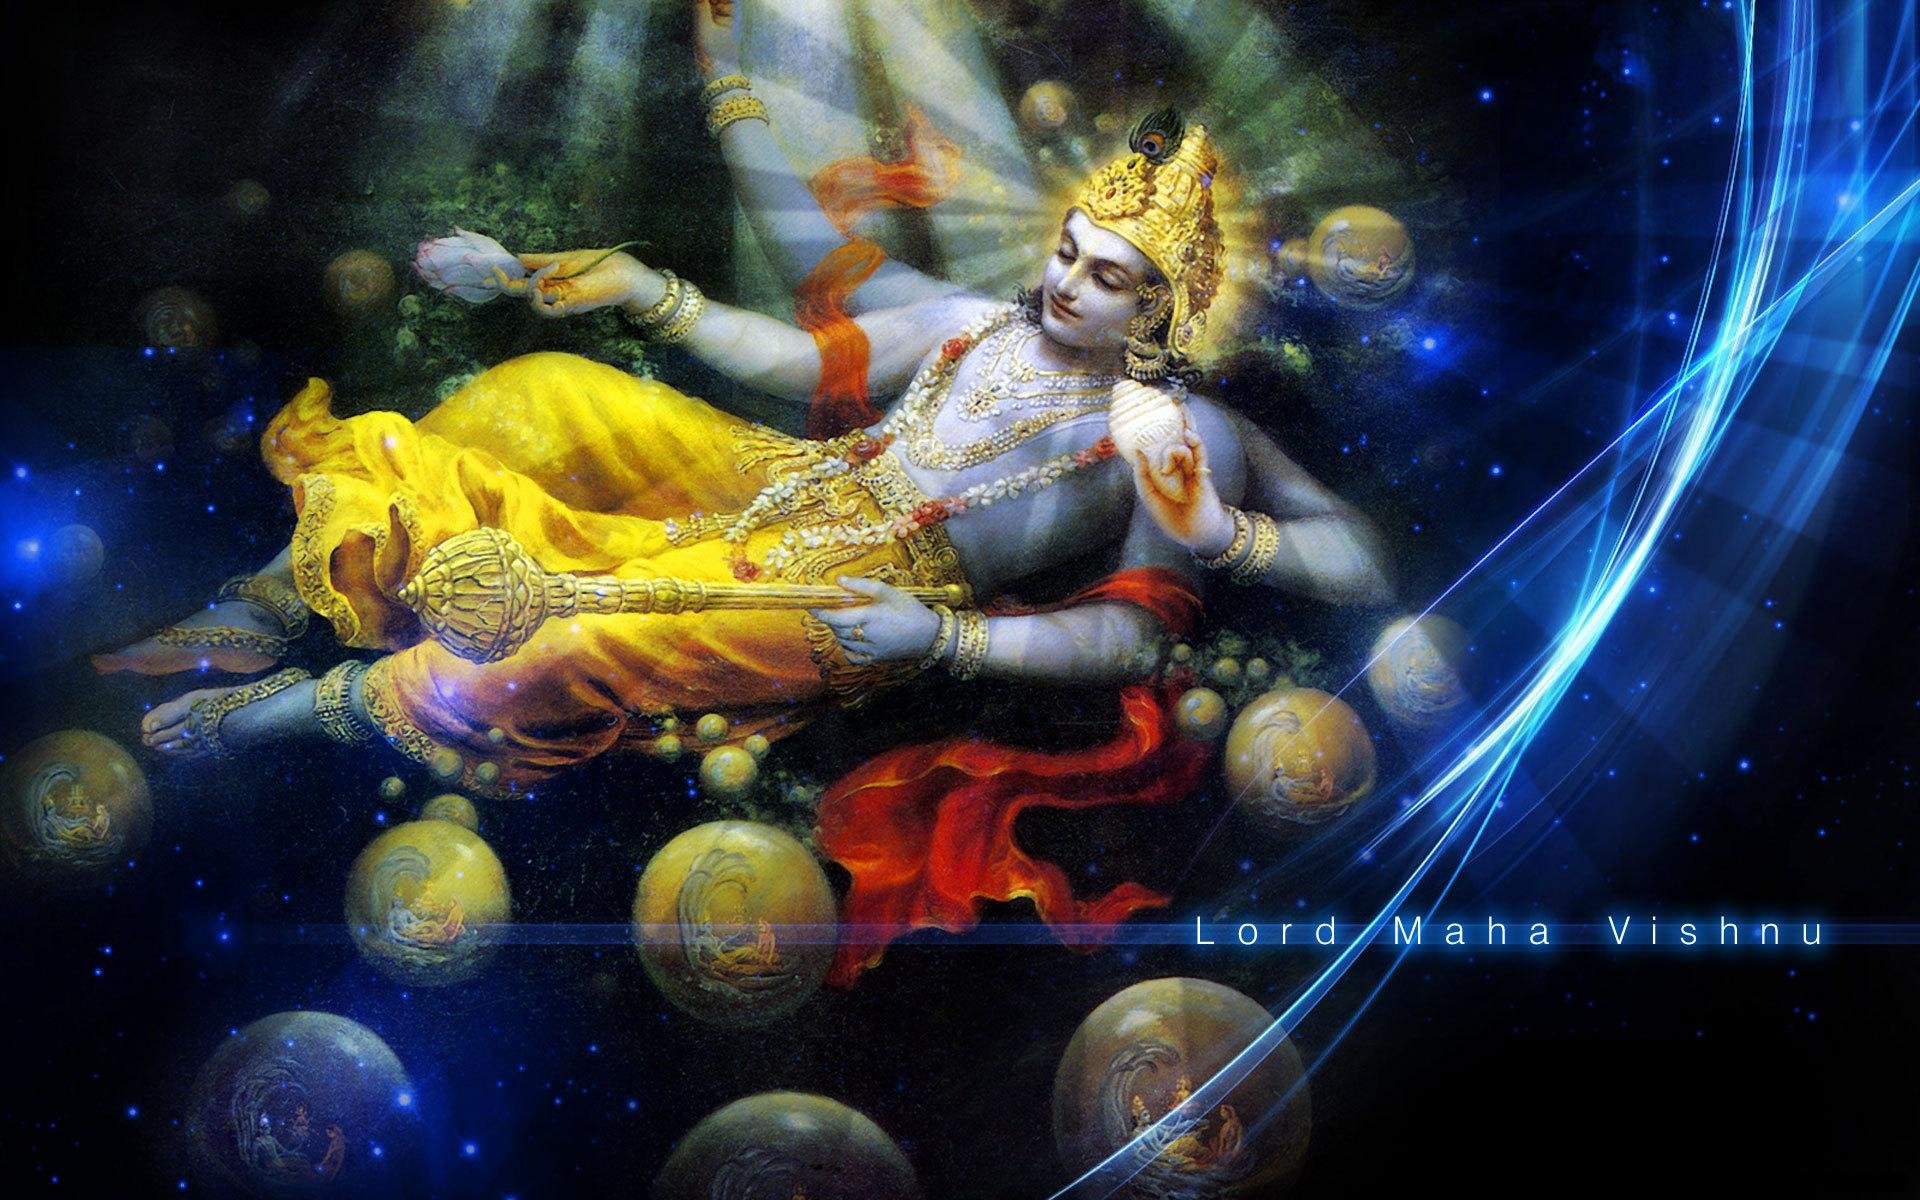 960 Koleksi Desktop Wallpaper Hindu Religious Gratis Terbaik